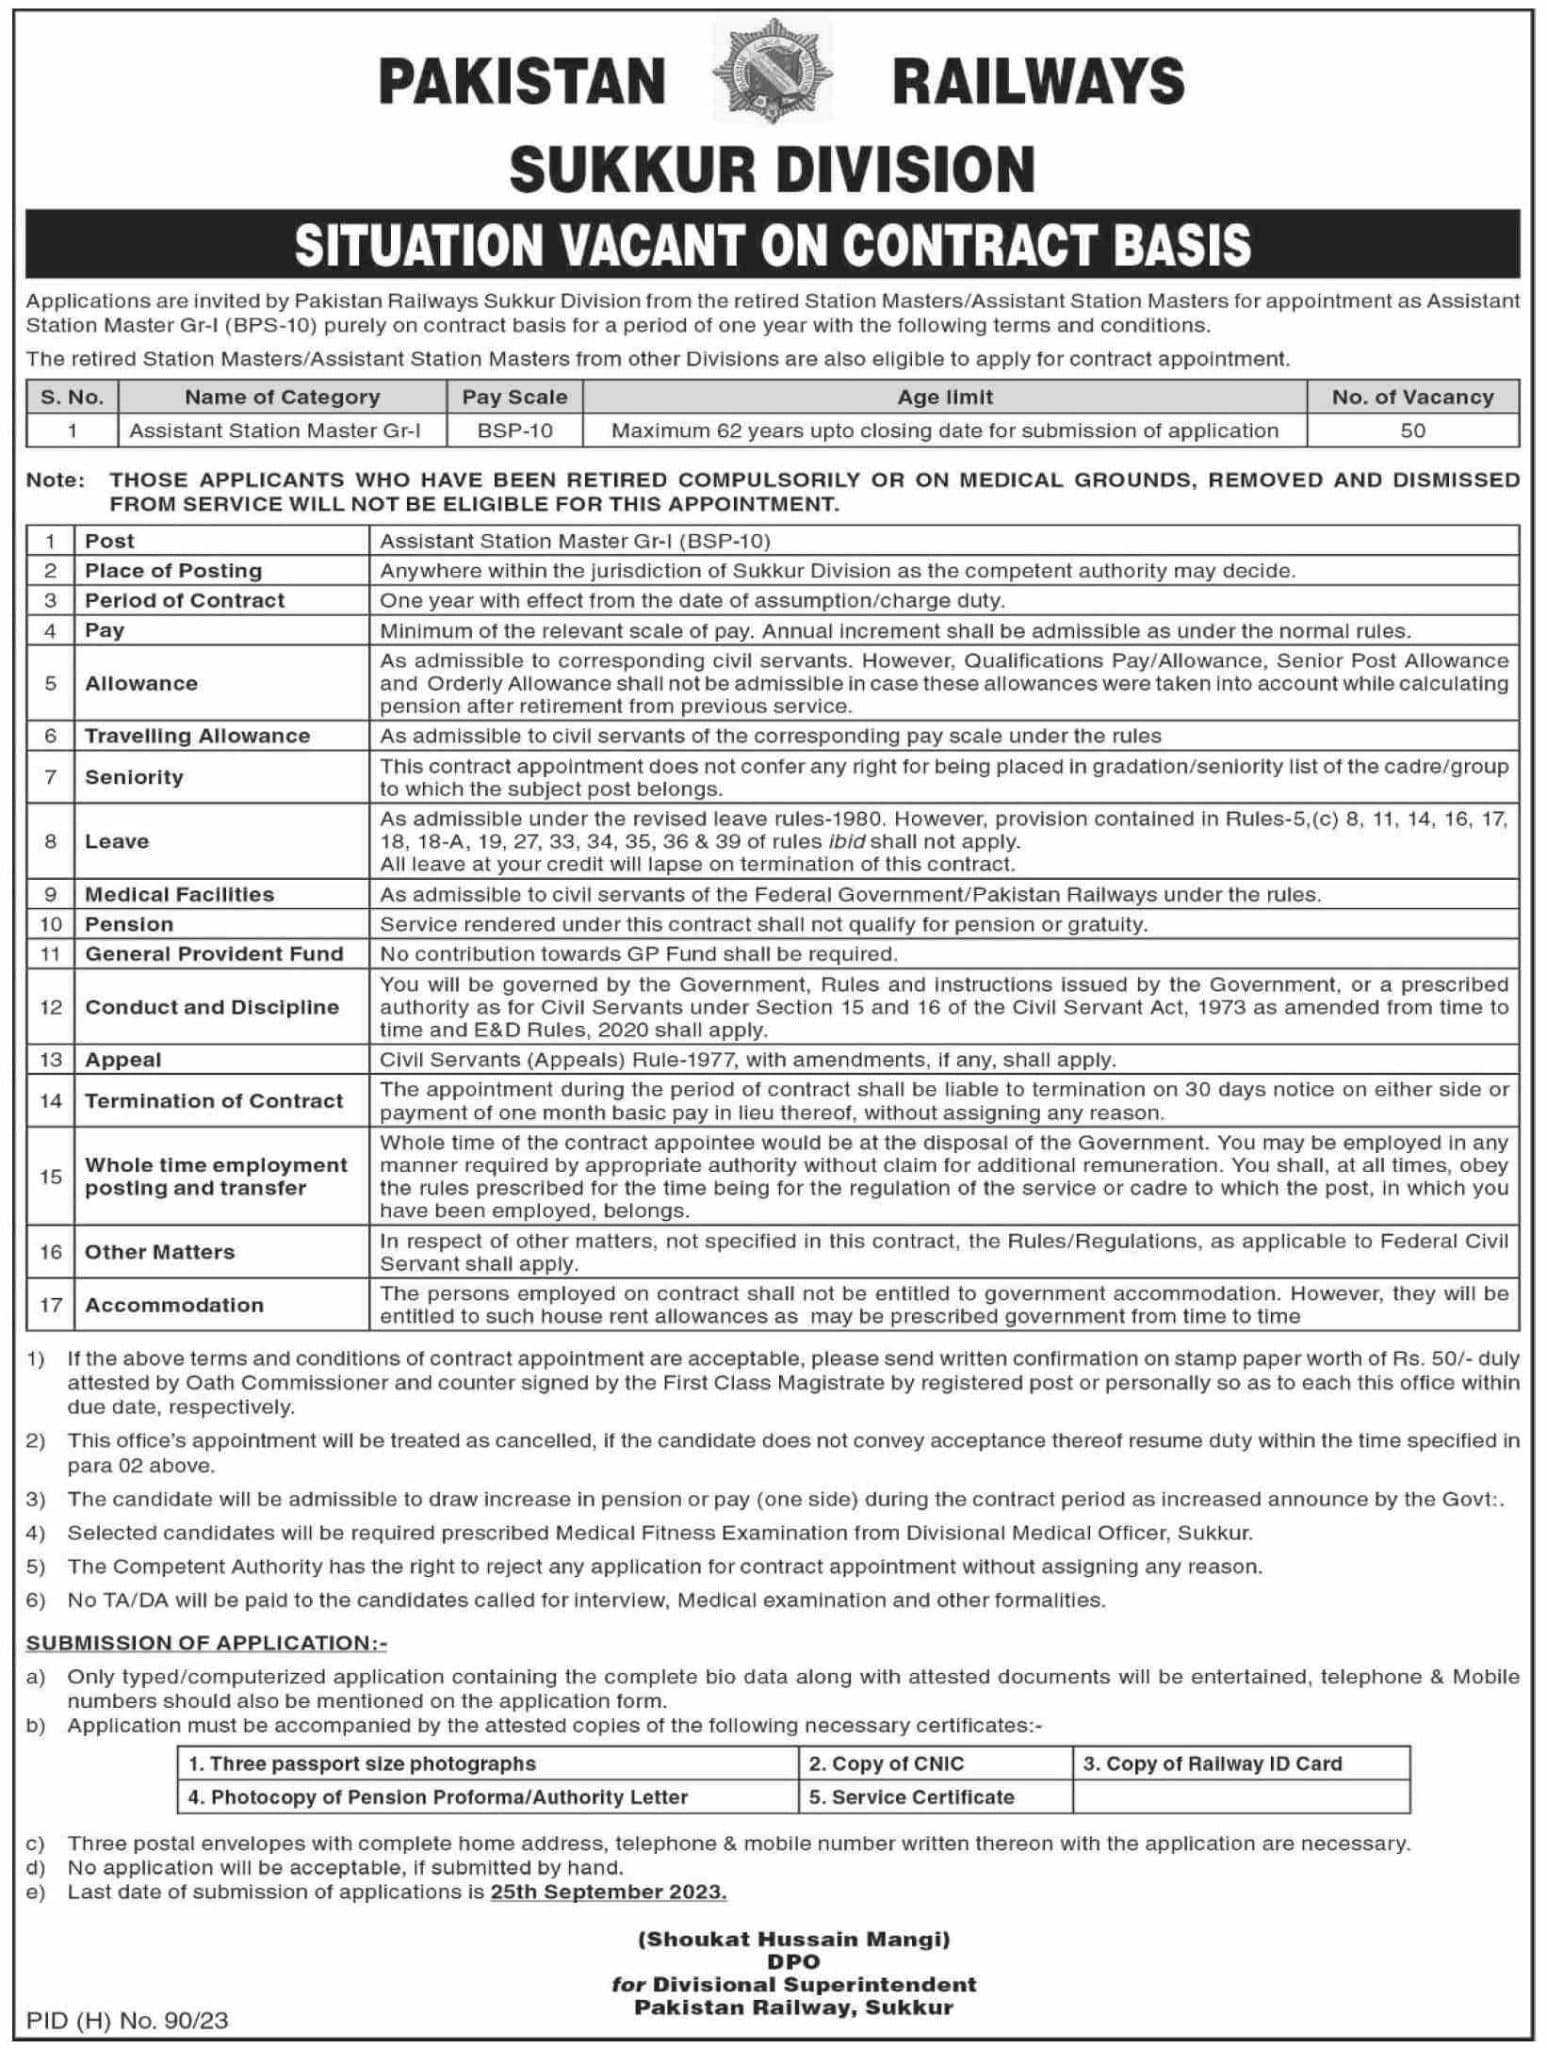 Pakistan Railways Jobs 2023 in Sukkur Division